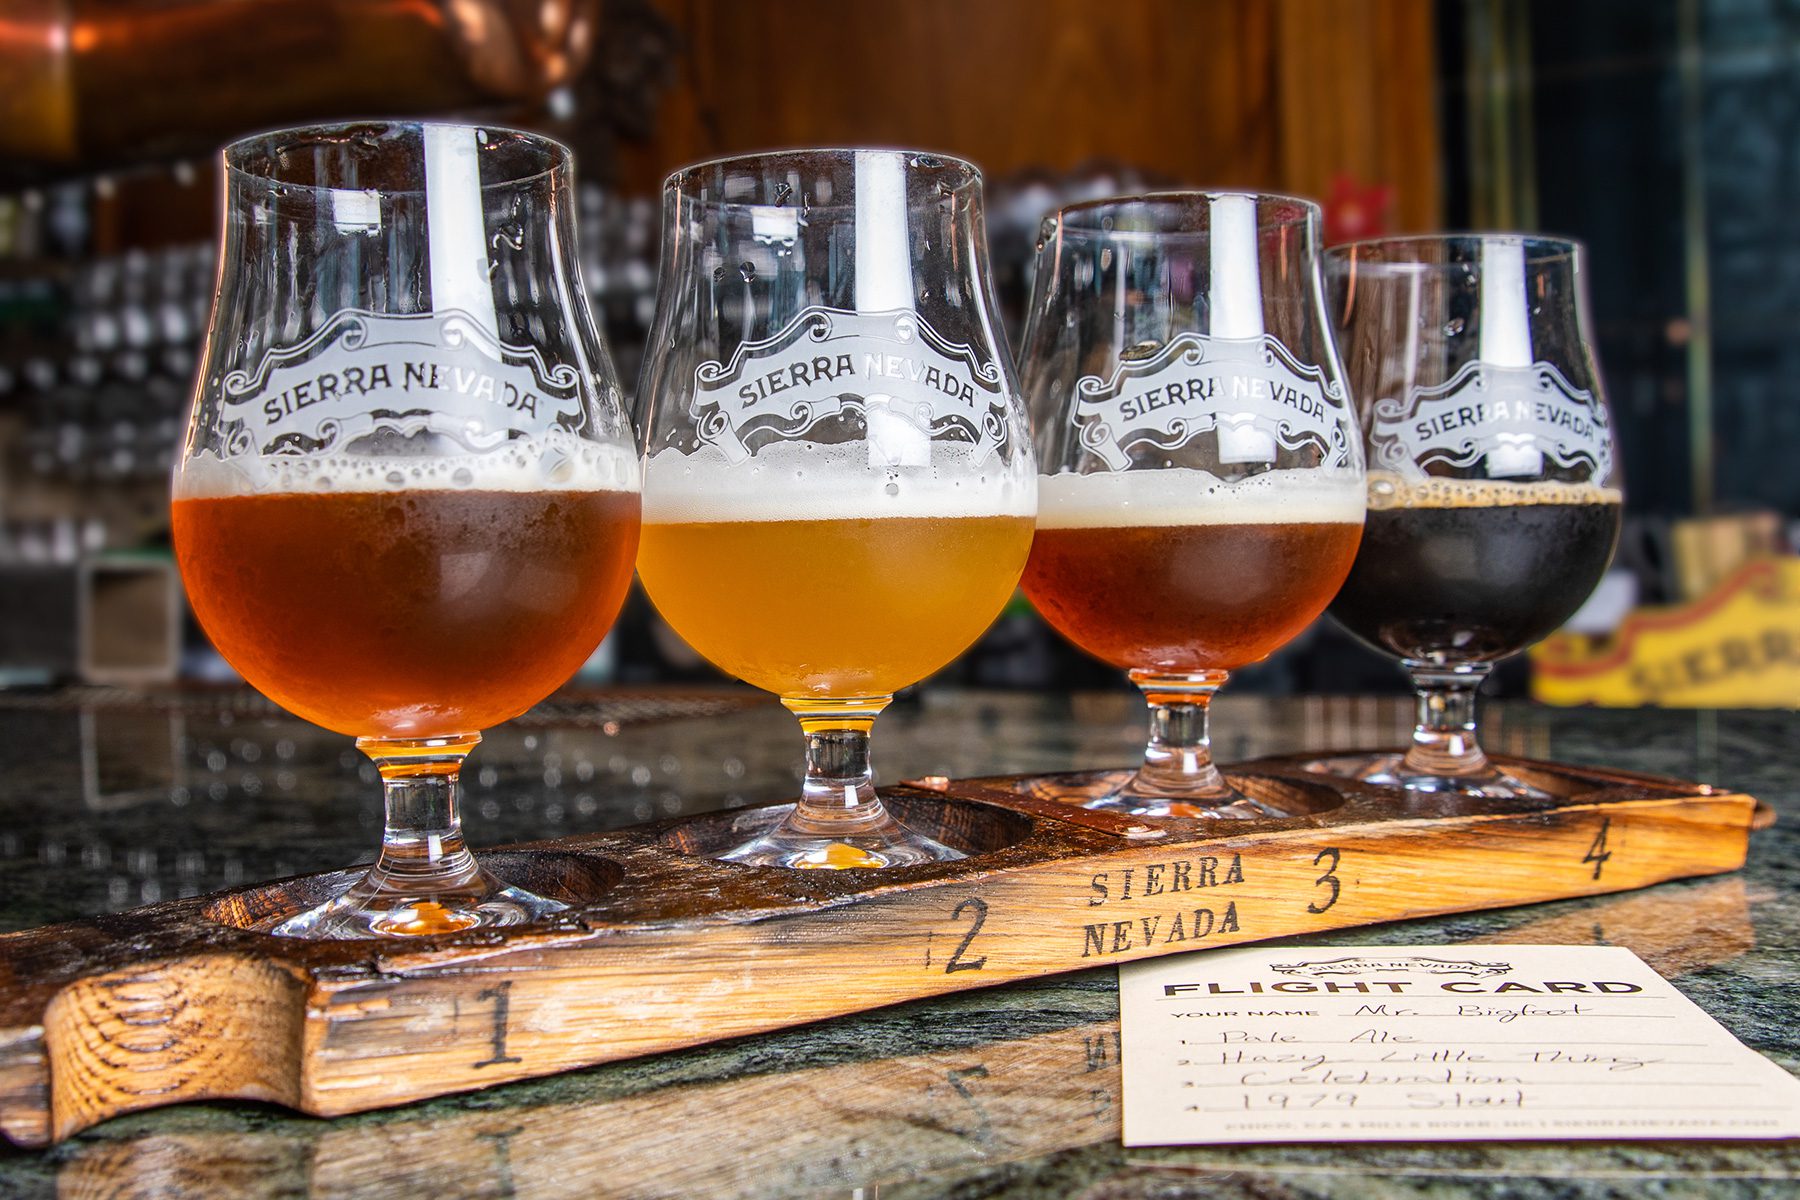 A sampling flight of four Sierra Nevada beers